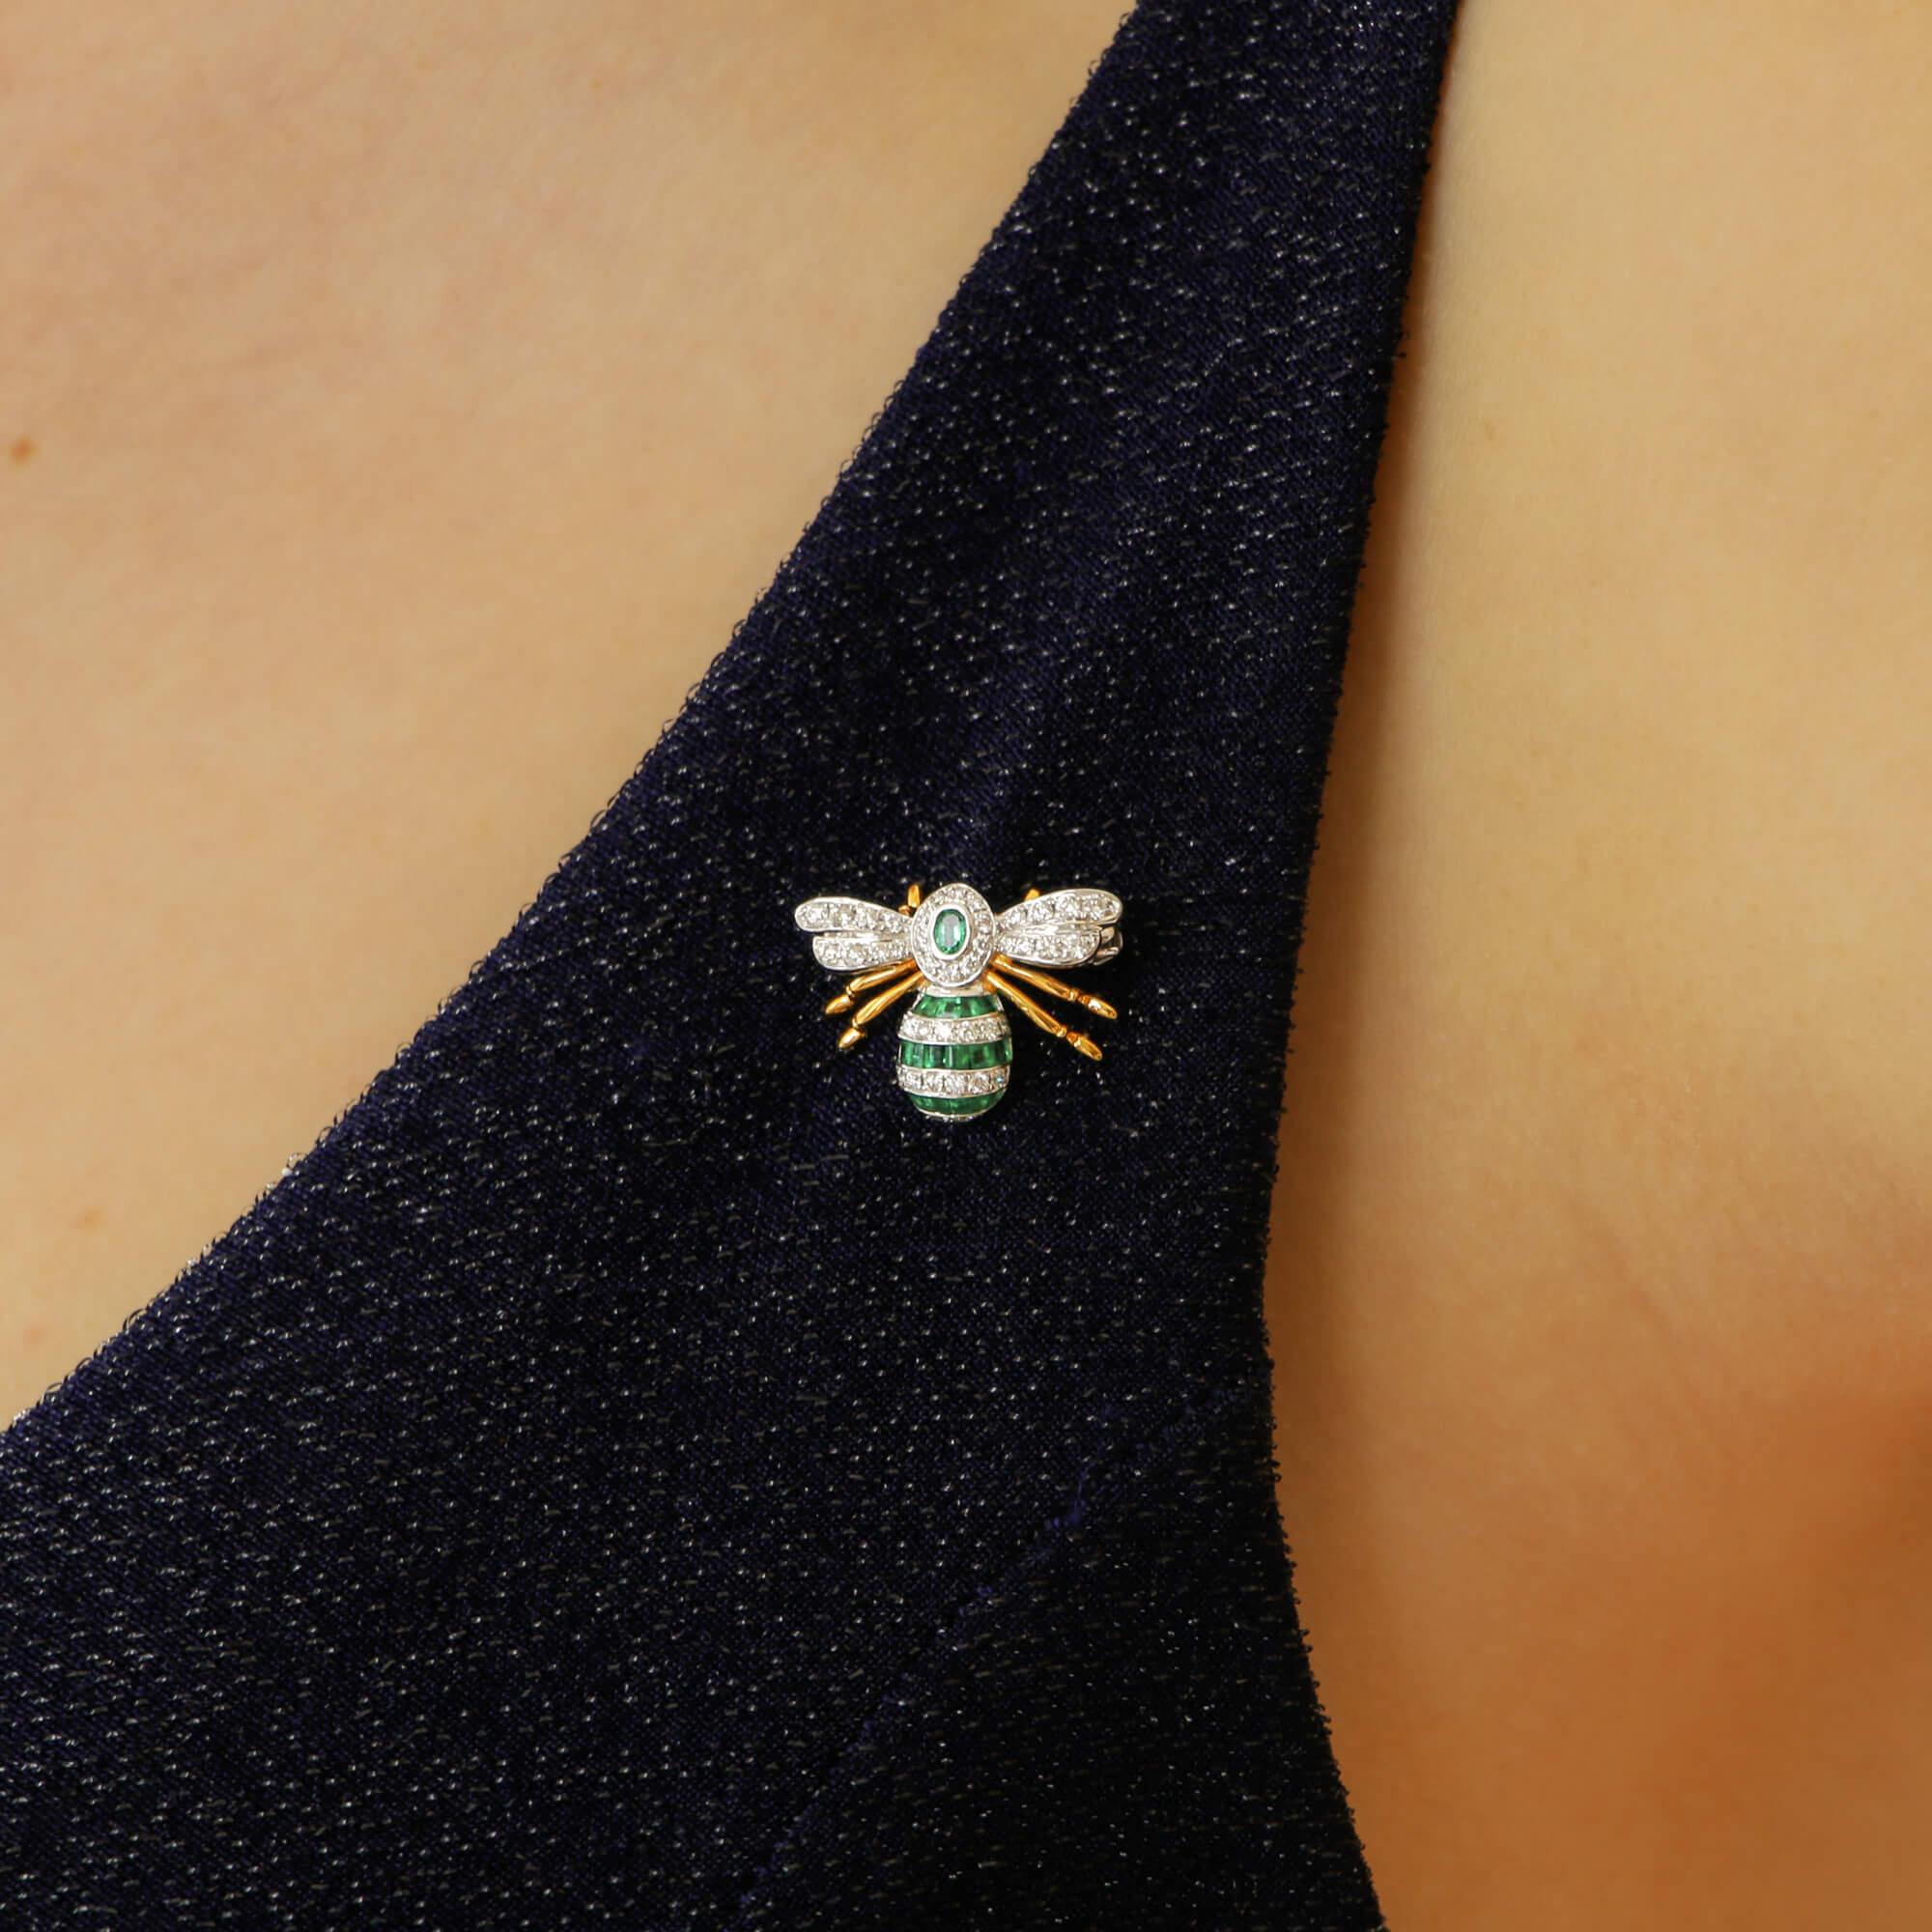 Eine wunderschöne handgefertigte Bienenbrosche mit Smaragd und Diamanten aus 18 Karat Weiß- und Gelbgold. 

Der Thorax der Biene besteht aus einem ovalen Smaragd in Rubover-Fassung in einem Halo aus körnig gefassten runden Brillanten, die Flügel